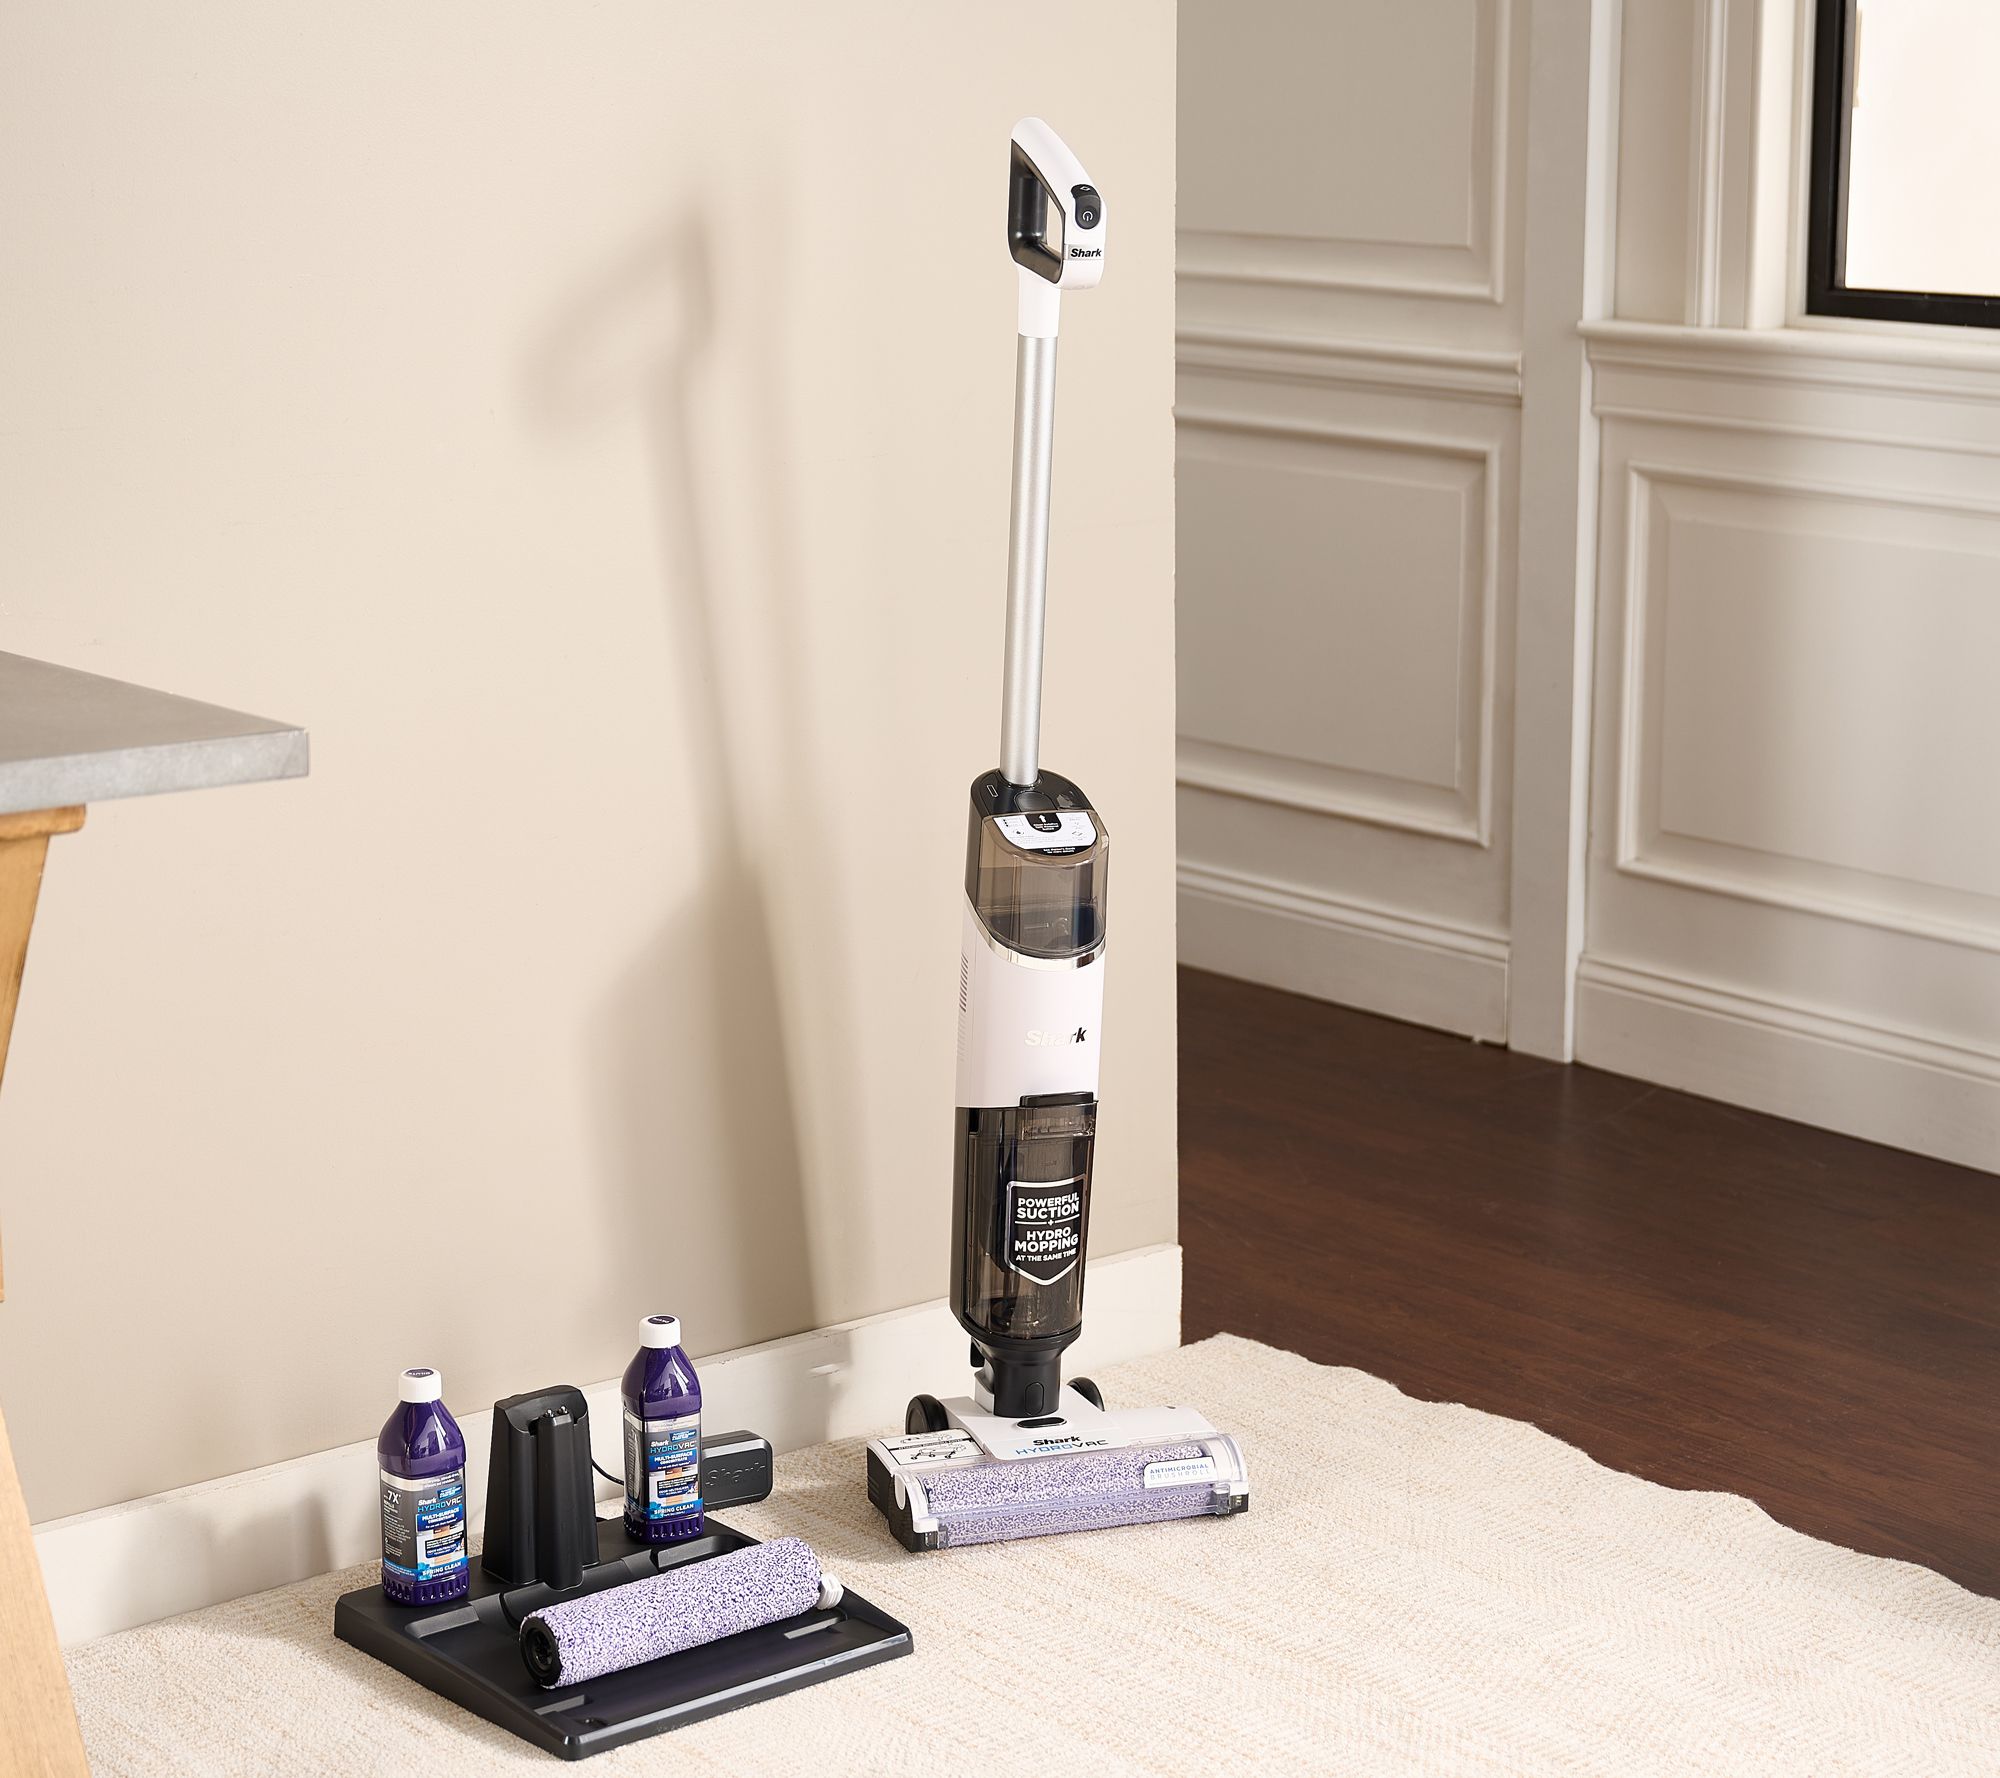 Tineco ifloor 3 - Upright Vacuum Cleaners